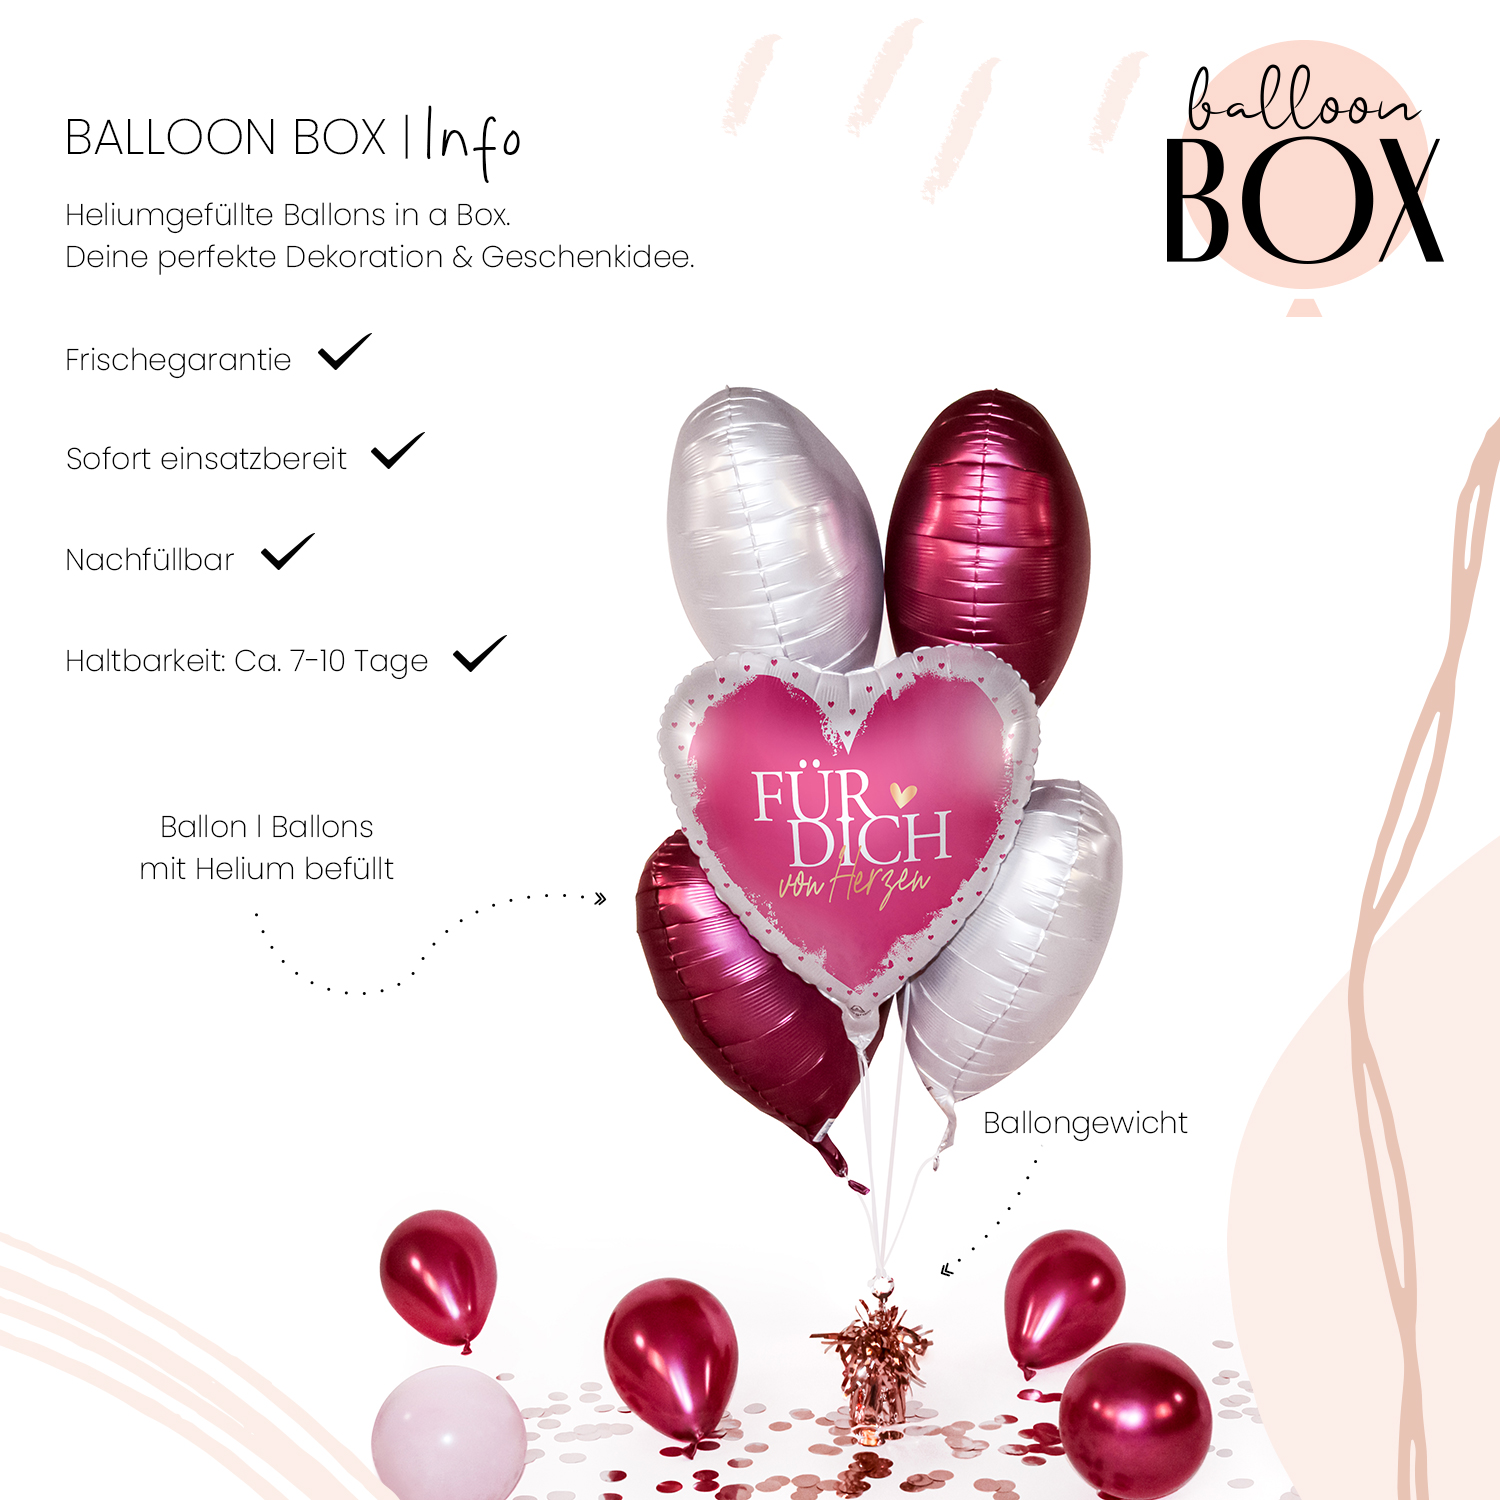 Heliumballon in a Box - Für Dich von Herzen